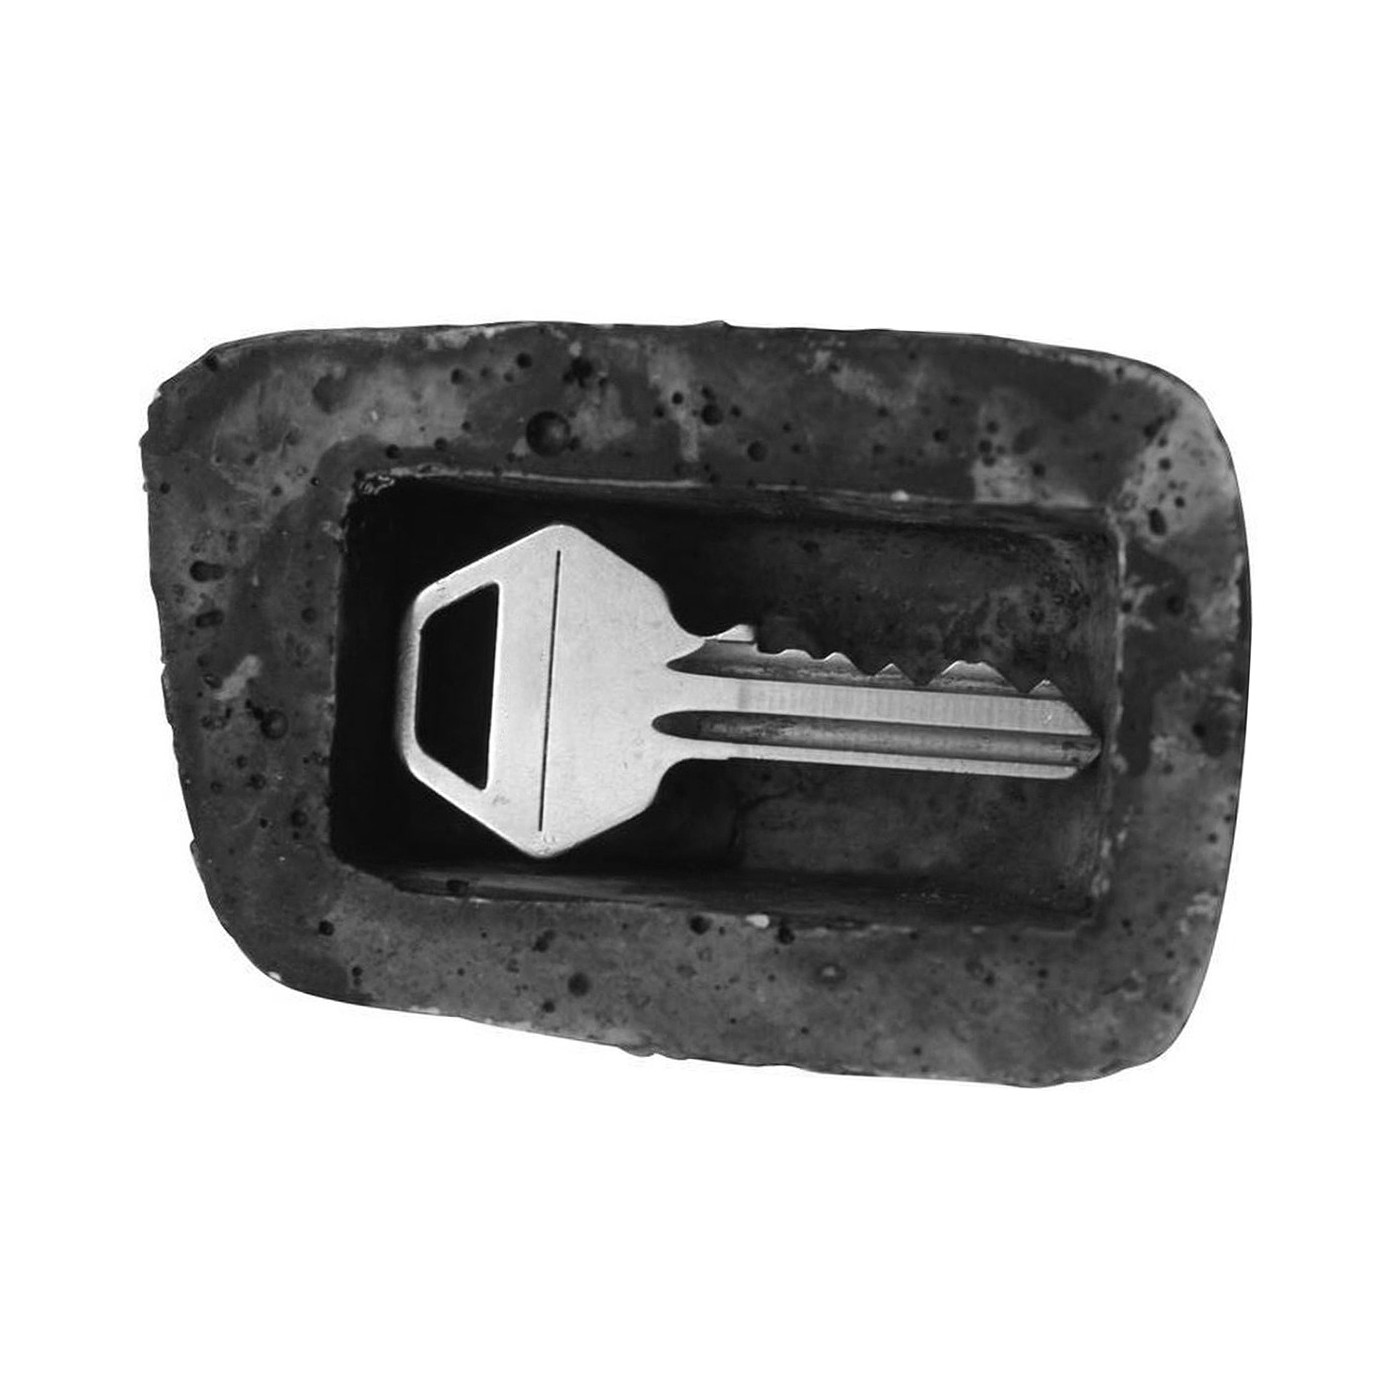 Kamień do ogrodu, w którym można schować klucz